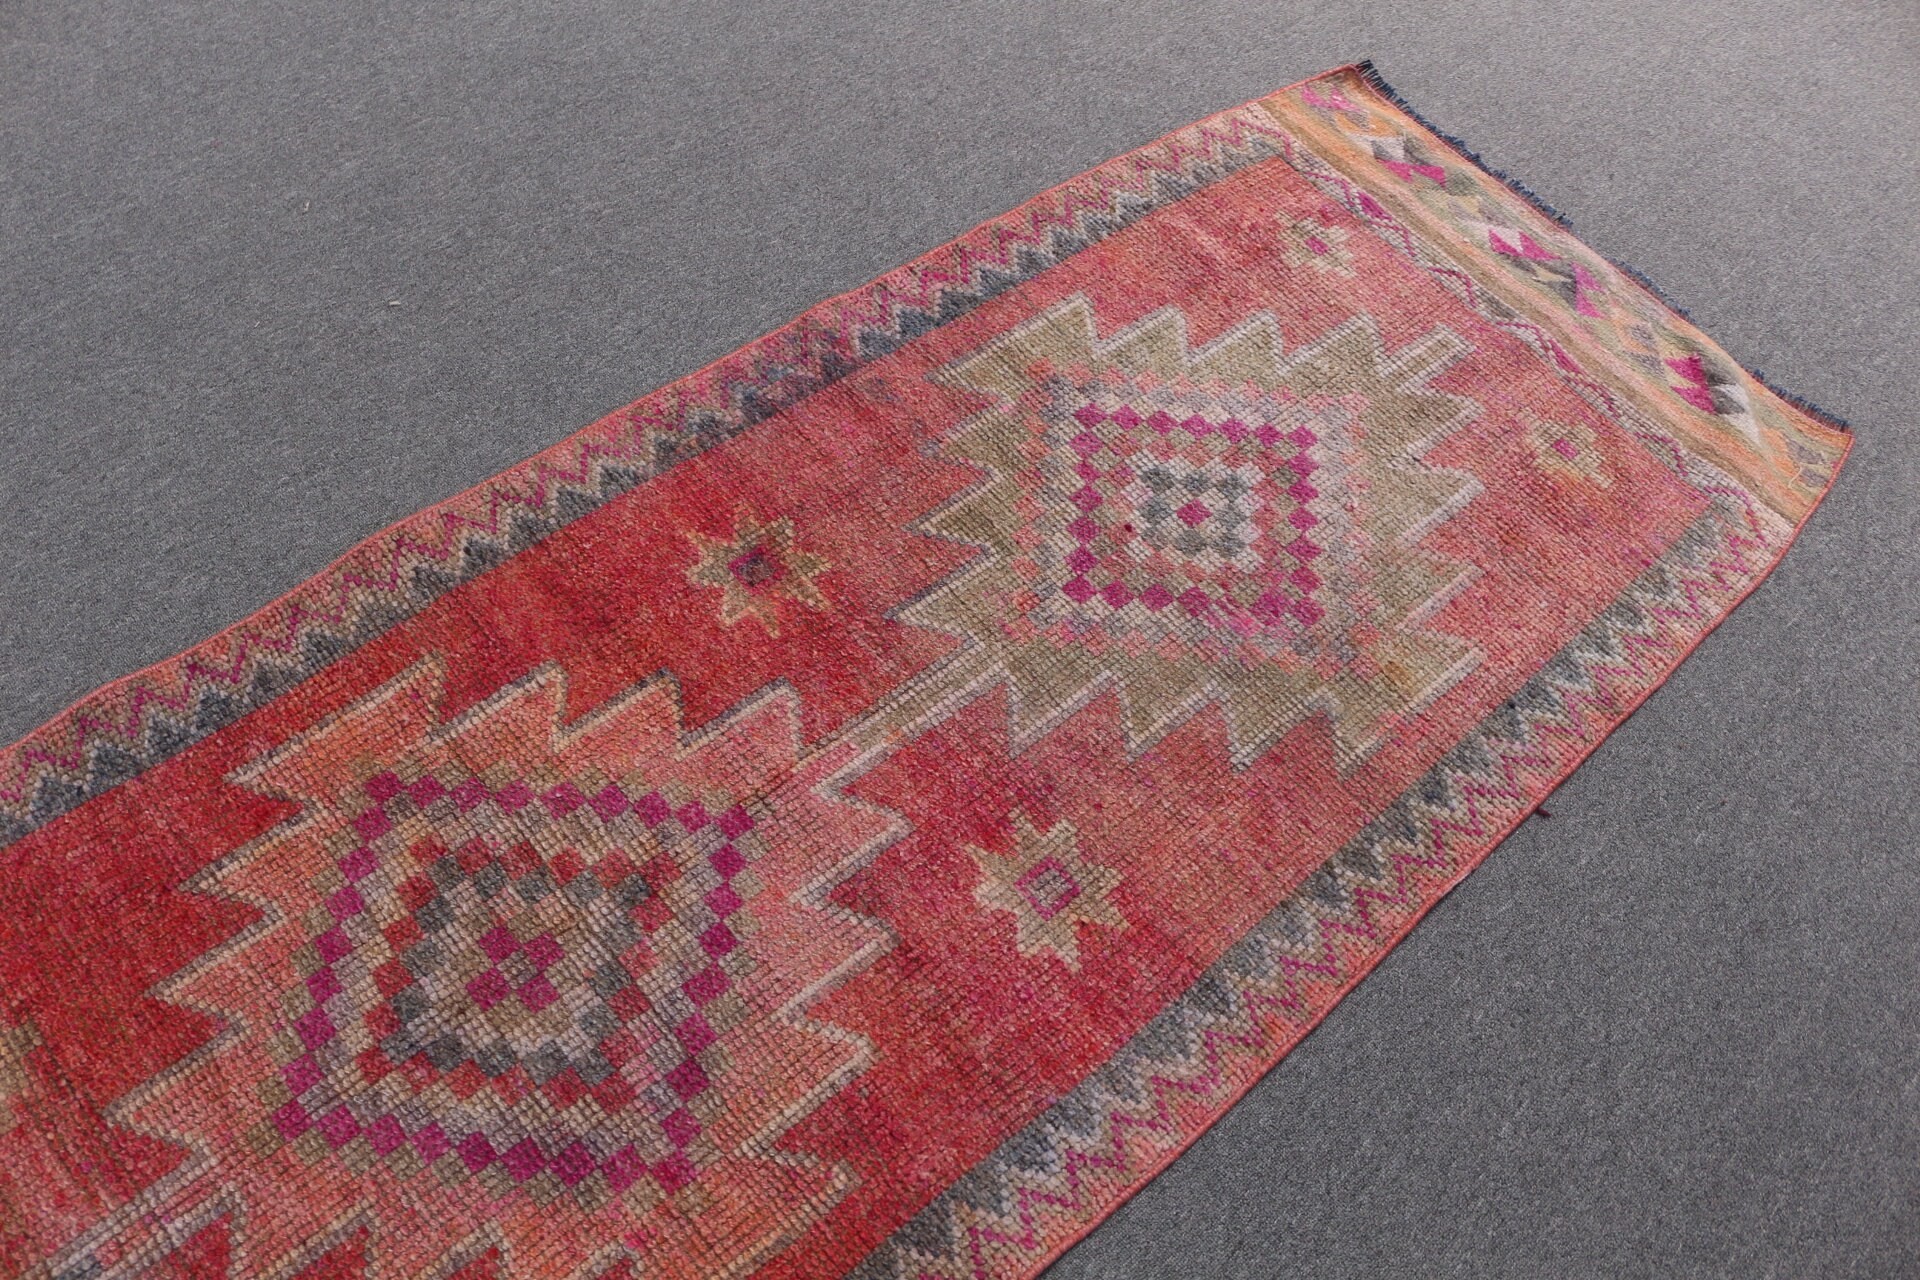 2.9x9.4 ft Runner Rug, Oriental Rugs, Pink Wool Rug, Flatweave Rug, Rugs for Corridor, Turkish Rug, Vintage Rug, Hallway Rug, Antique Rug